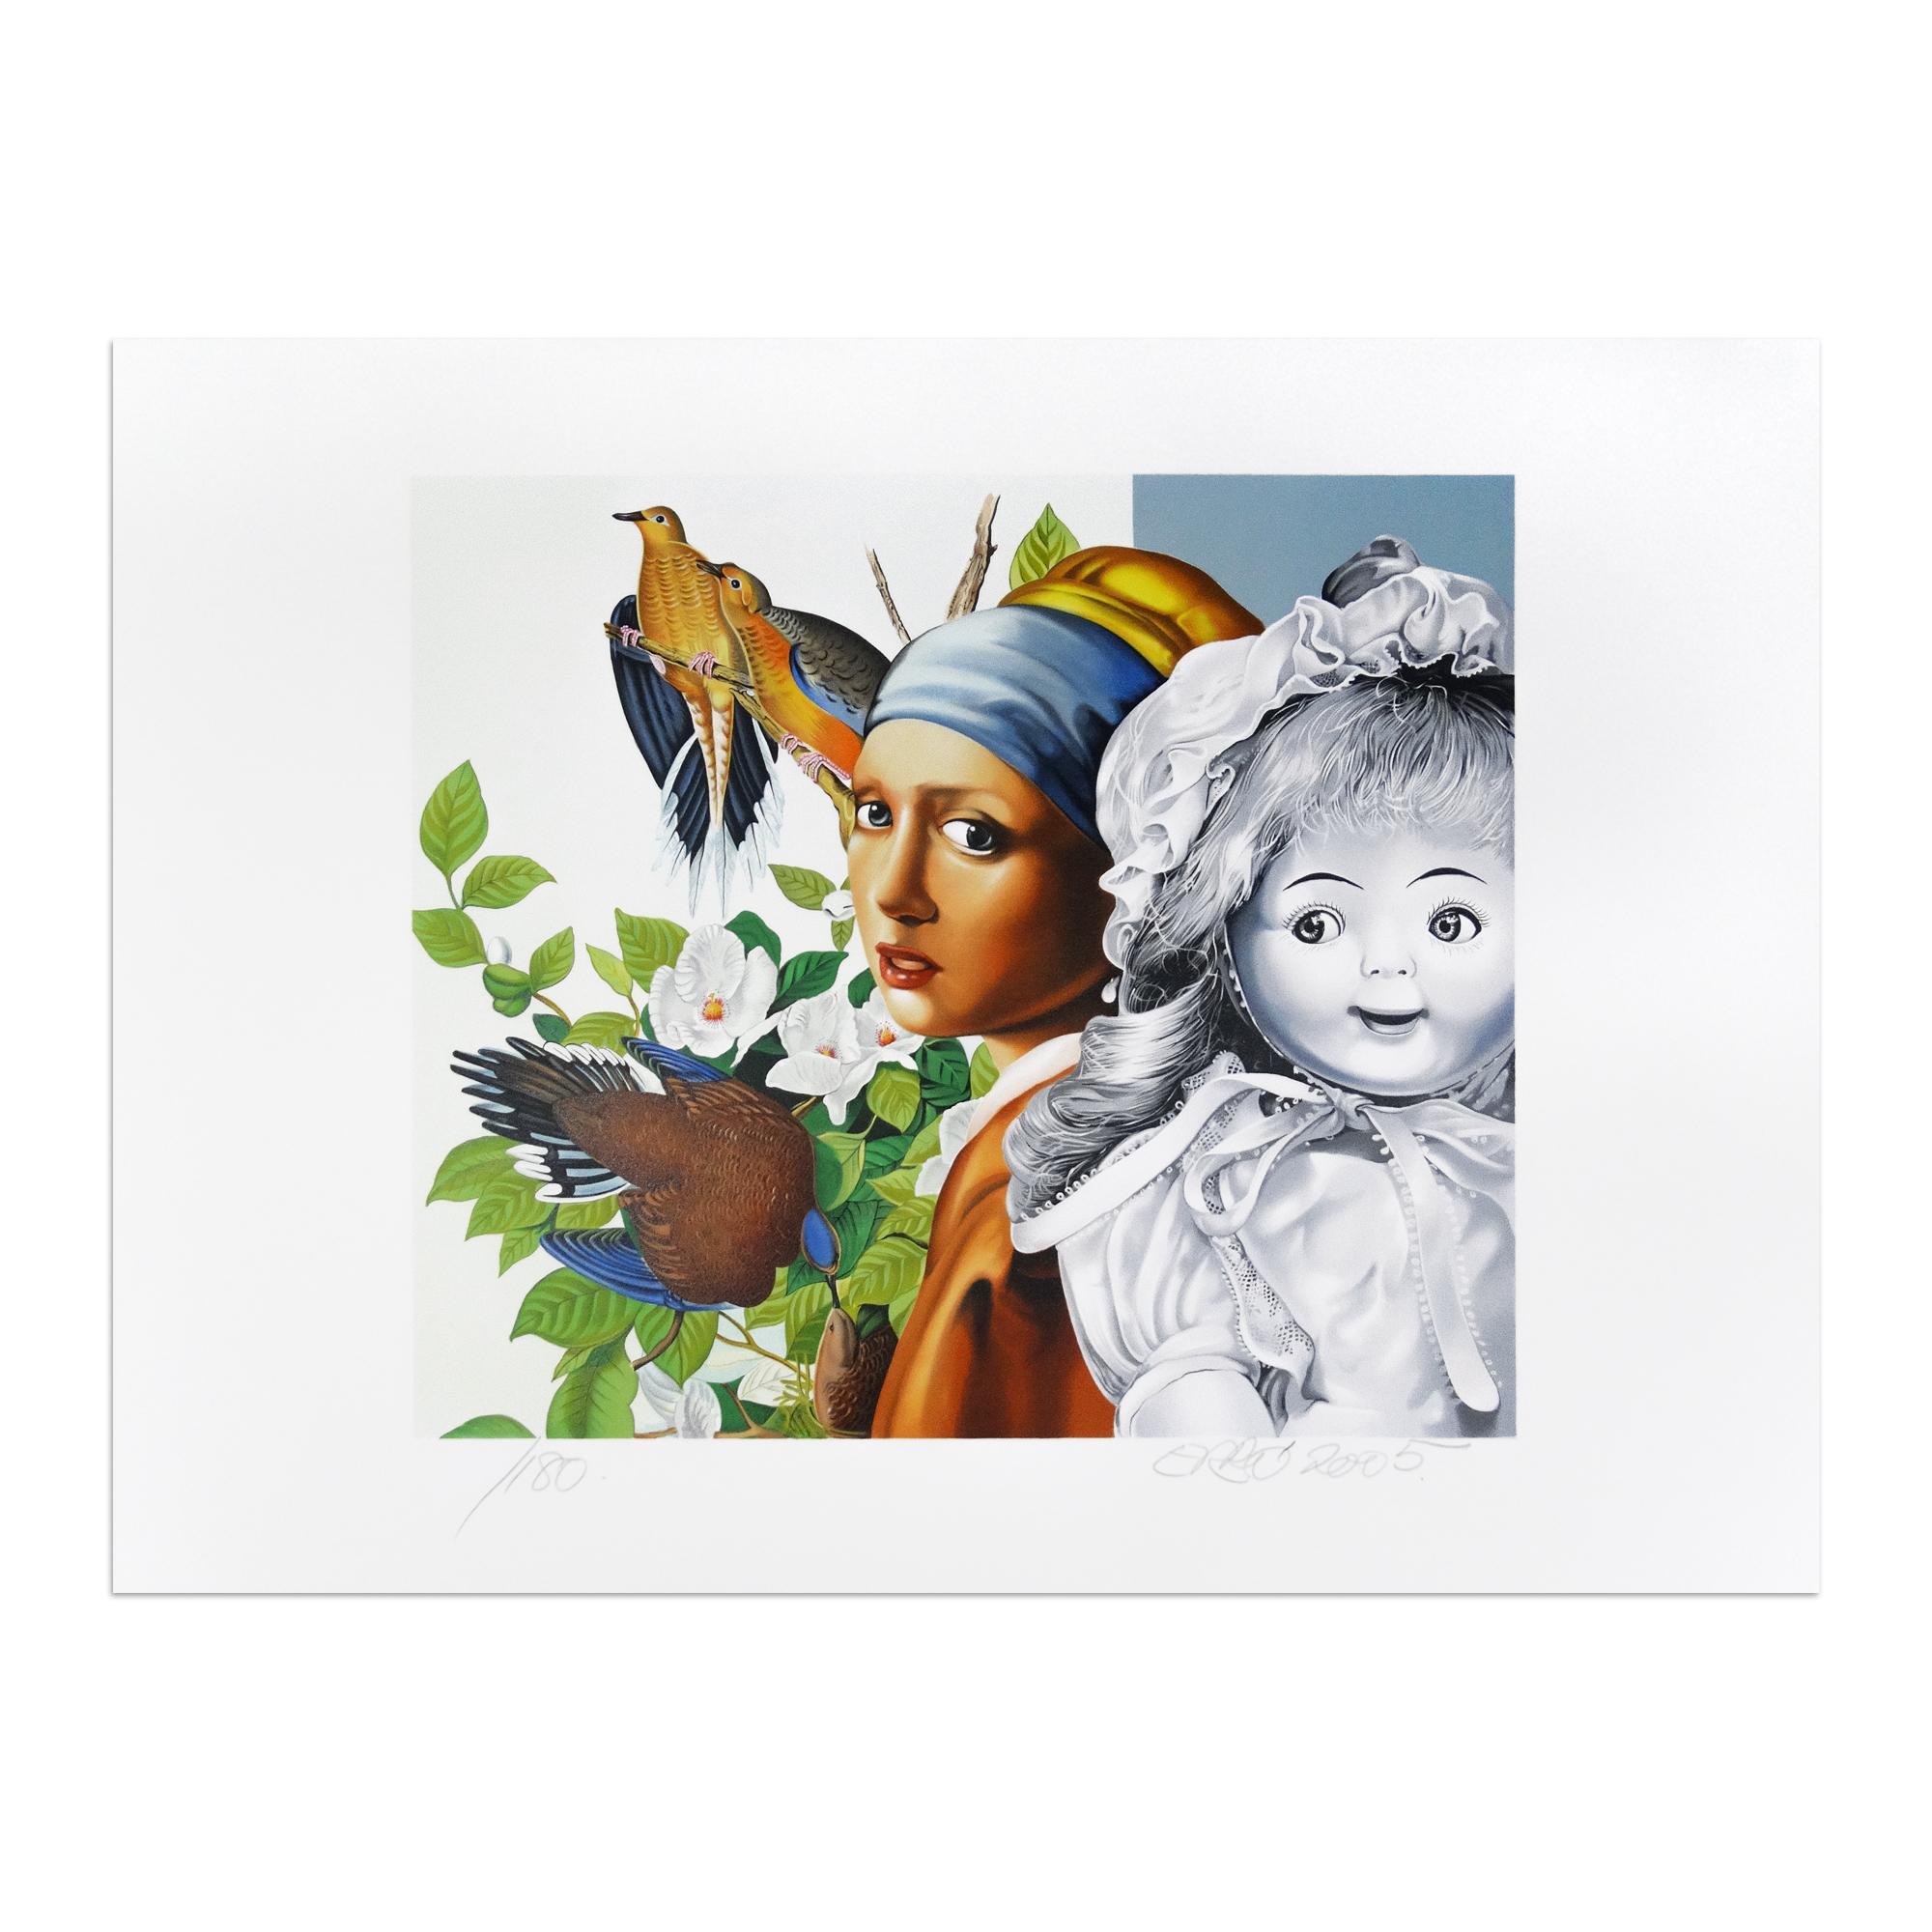 Gudmundur Gudmundsson, alias Erró (islandais, né en 1932)
Vermeer, 2005
Médium : Lithographie sur papier
Dimensions : 58,4 × 80 cm
Édition de 180 exemplaires : signés et numérotés à la main au crayon.
Condit : Excellent